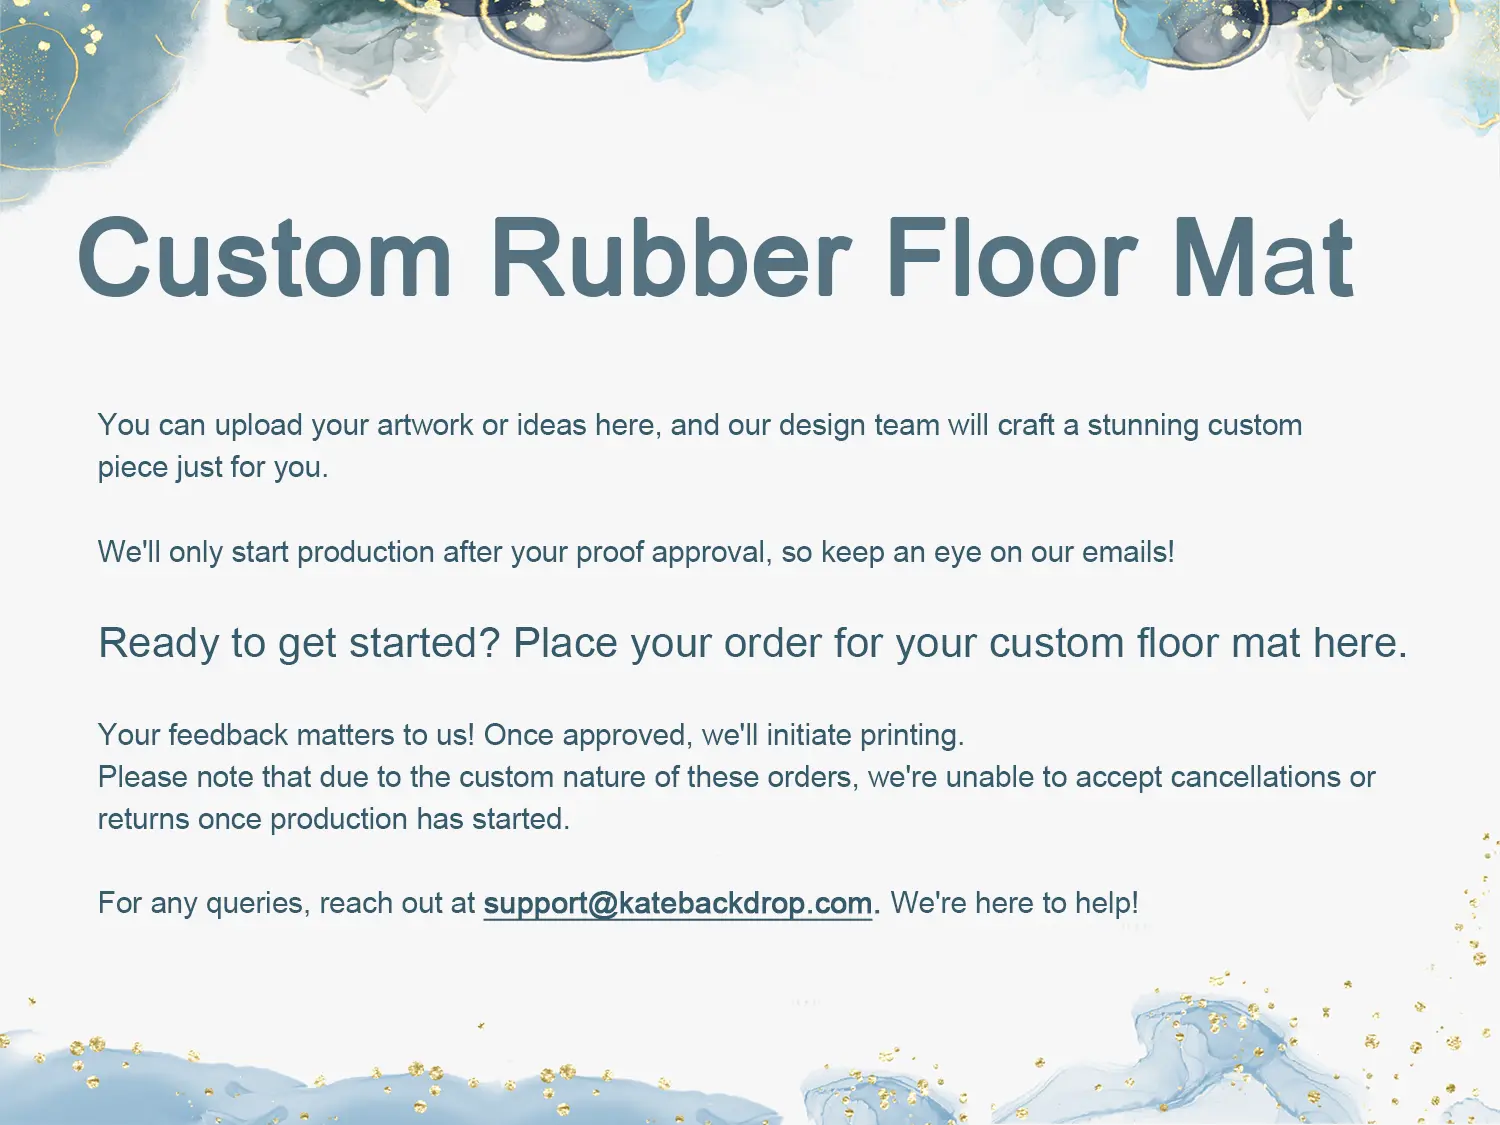 Kate Custom Rubber Floor Mat Floor drop for Photography